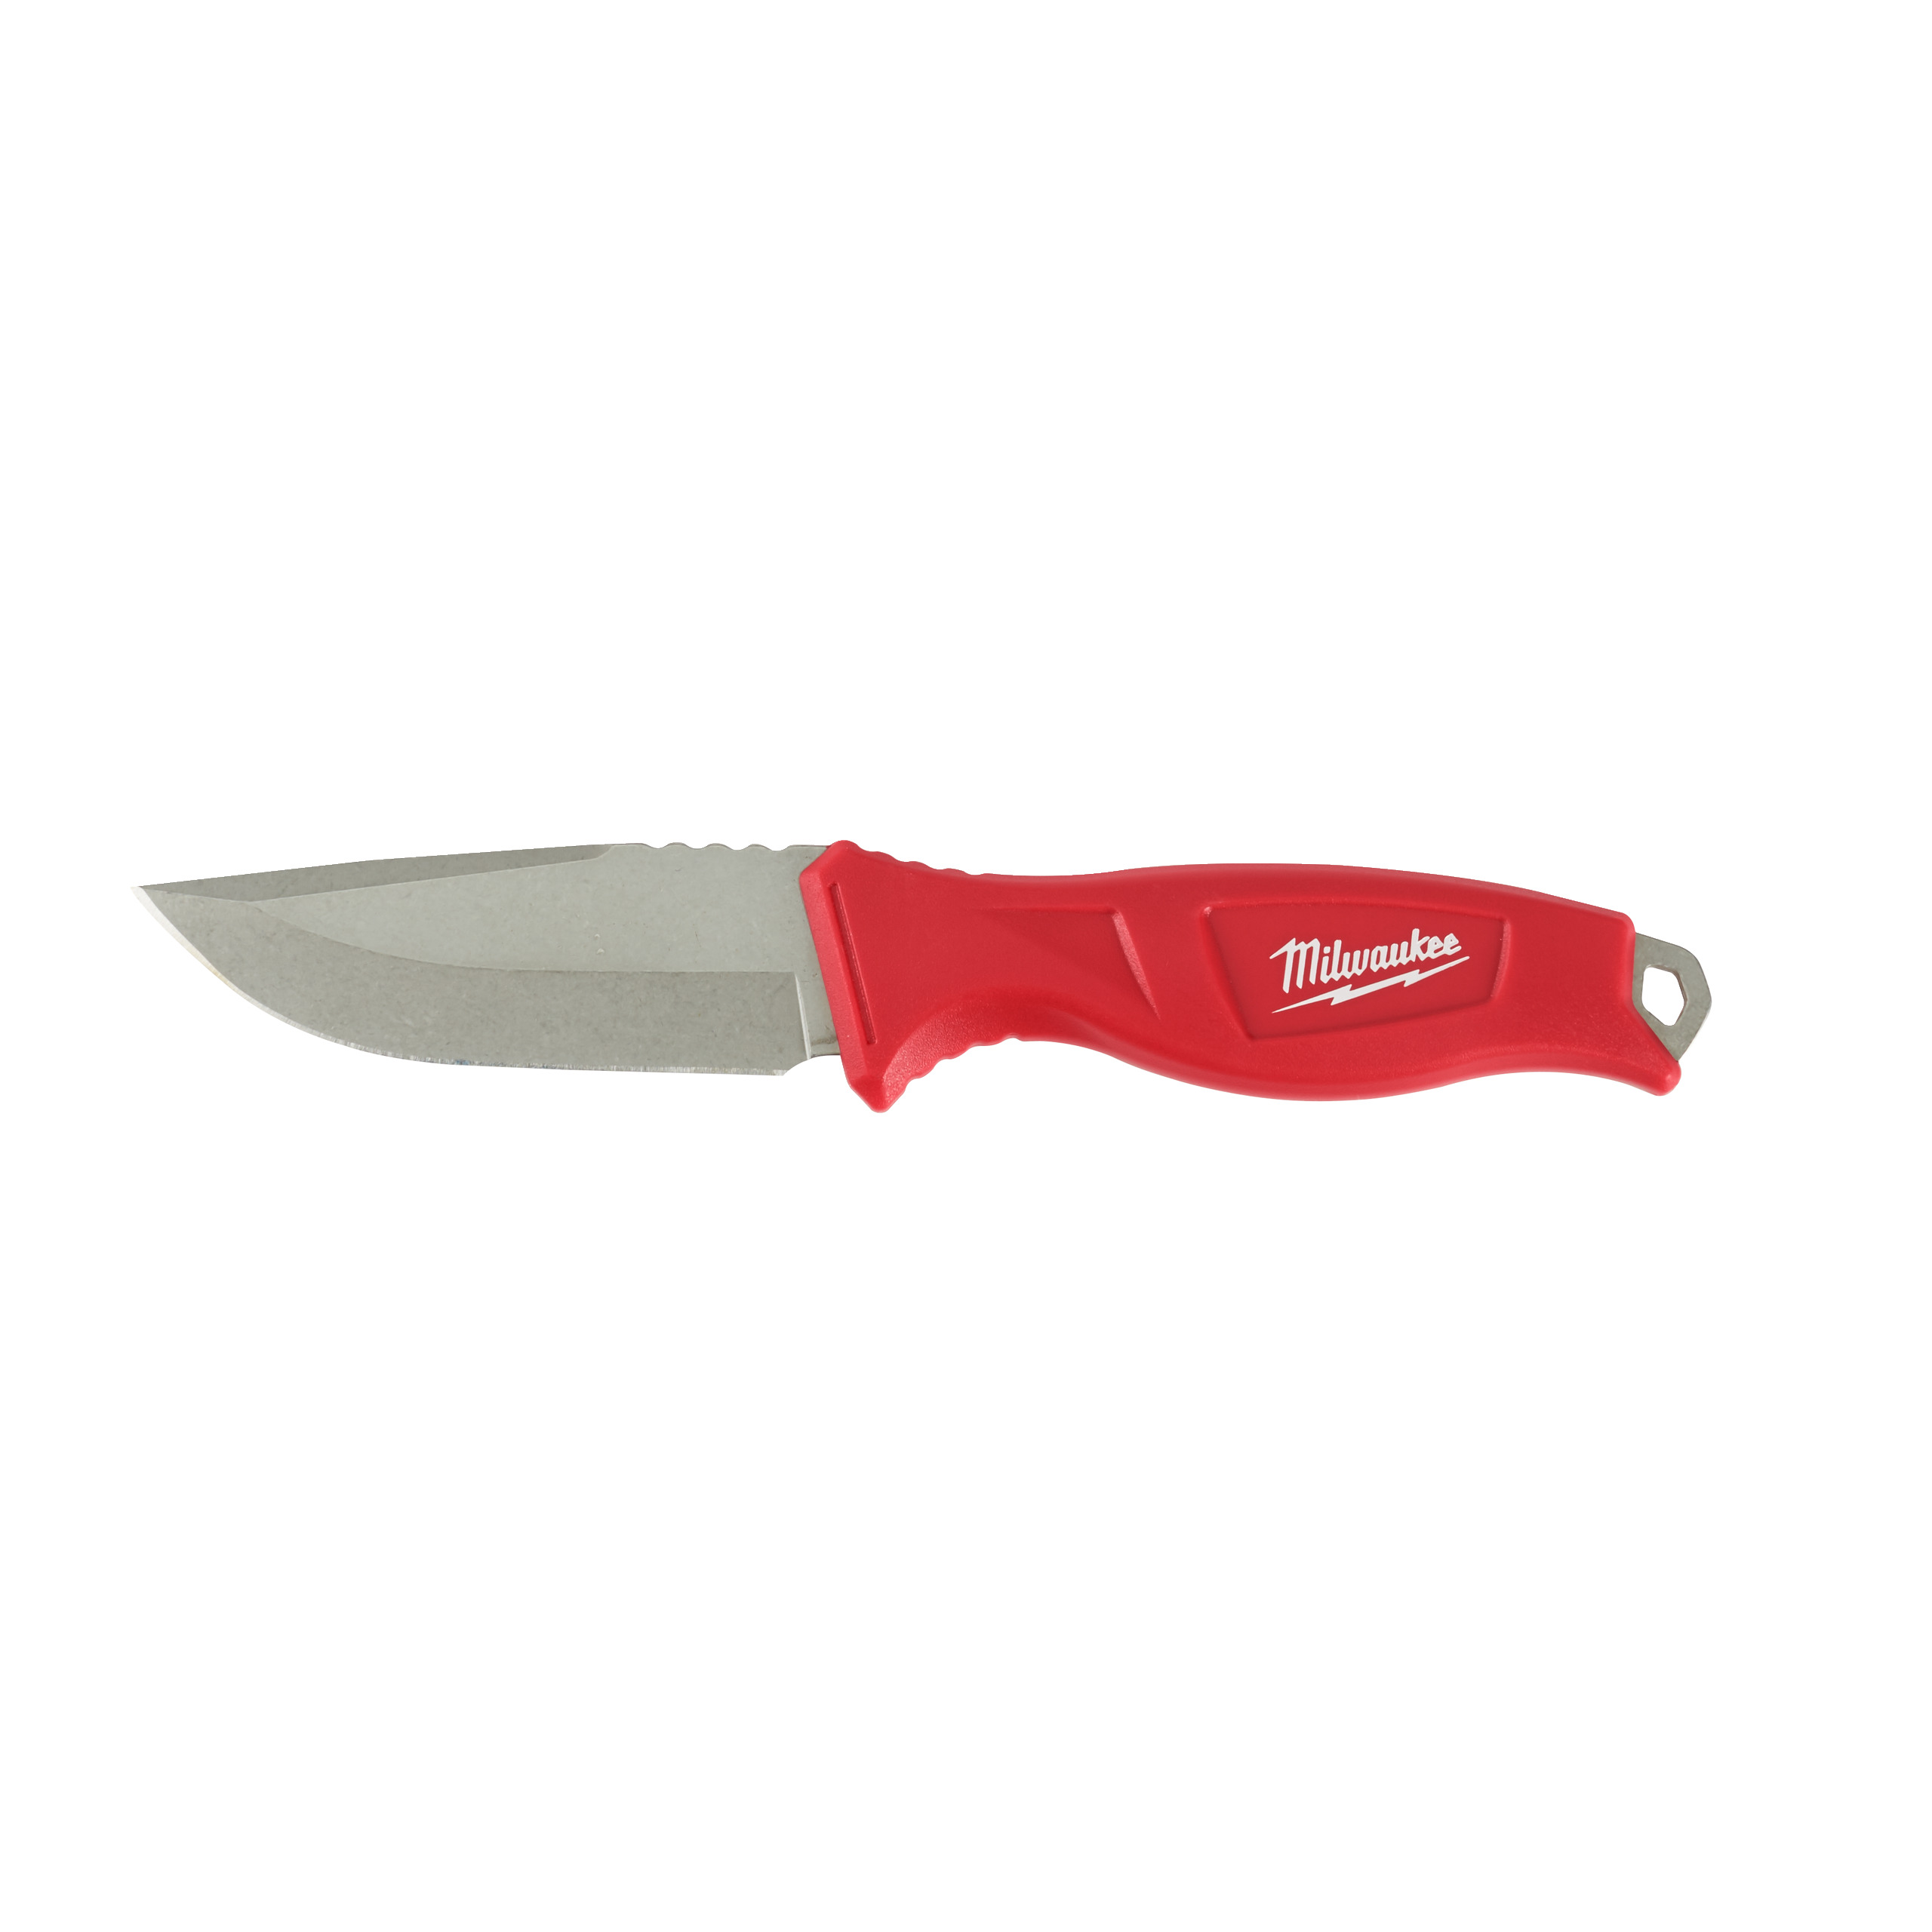 Universal-Messer mit feststehender Klinge